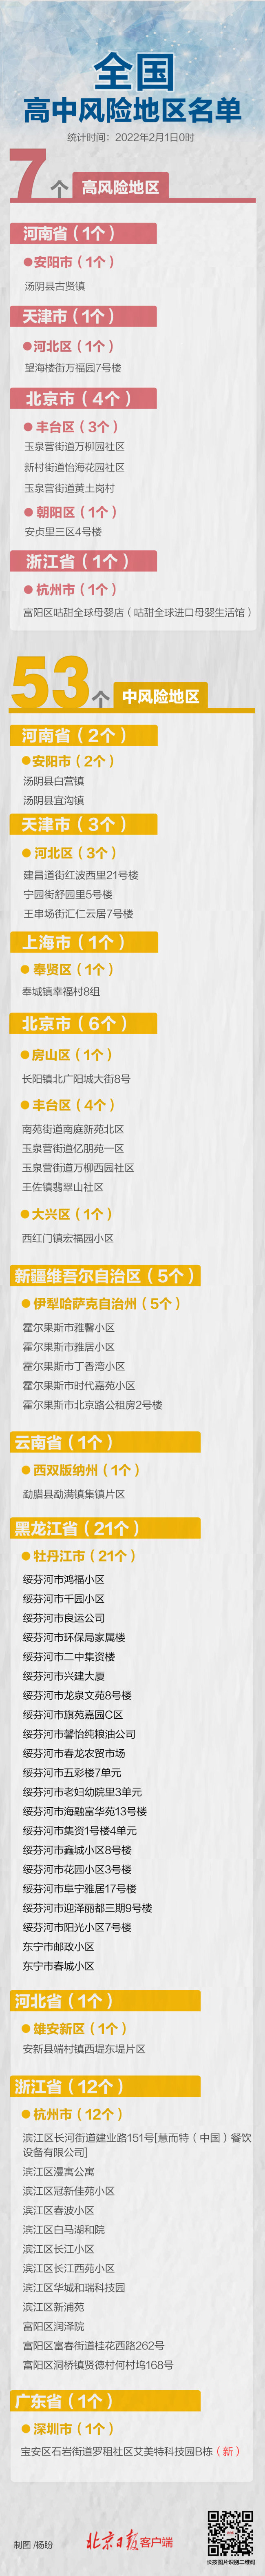 上海为“辅警”立法：界定身份，列出履职负面清单 - Bcasino - PeraPlay Gaming 百度热点快讯